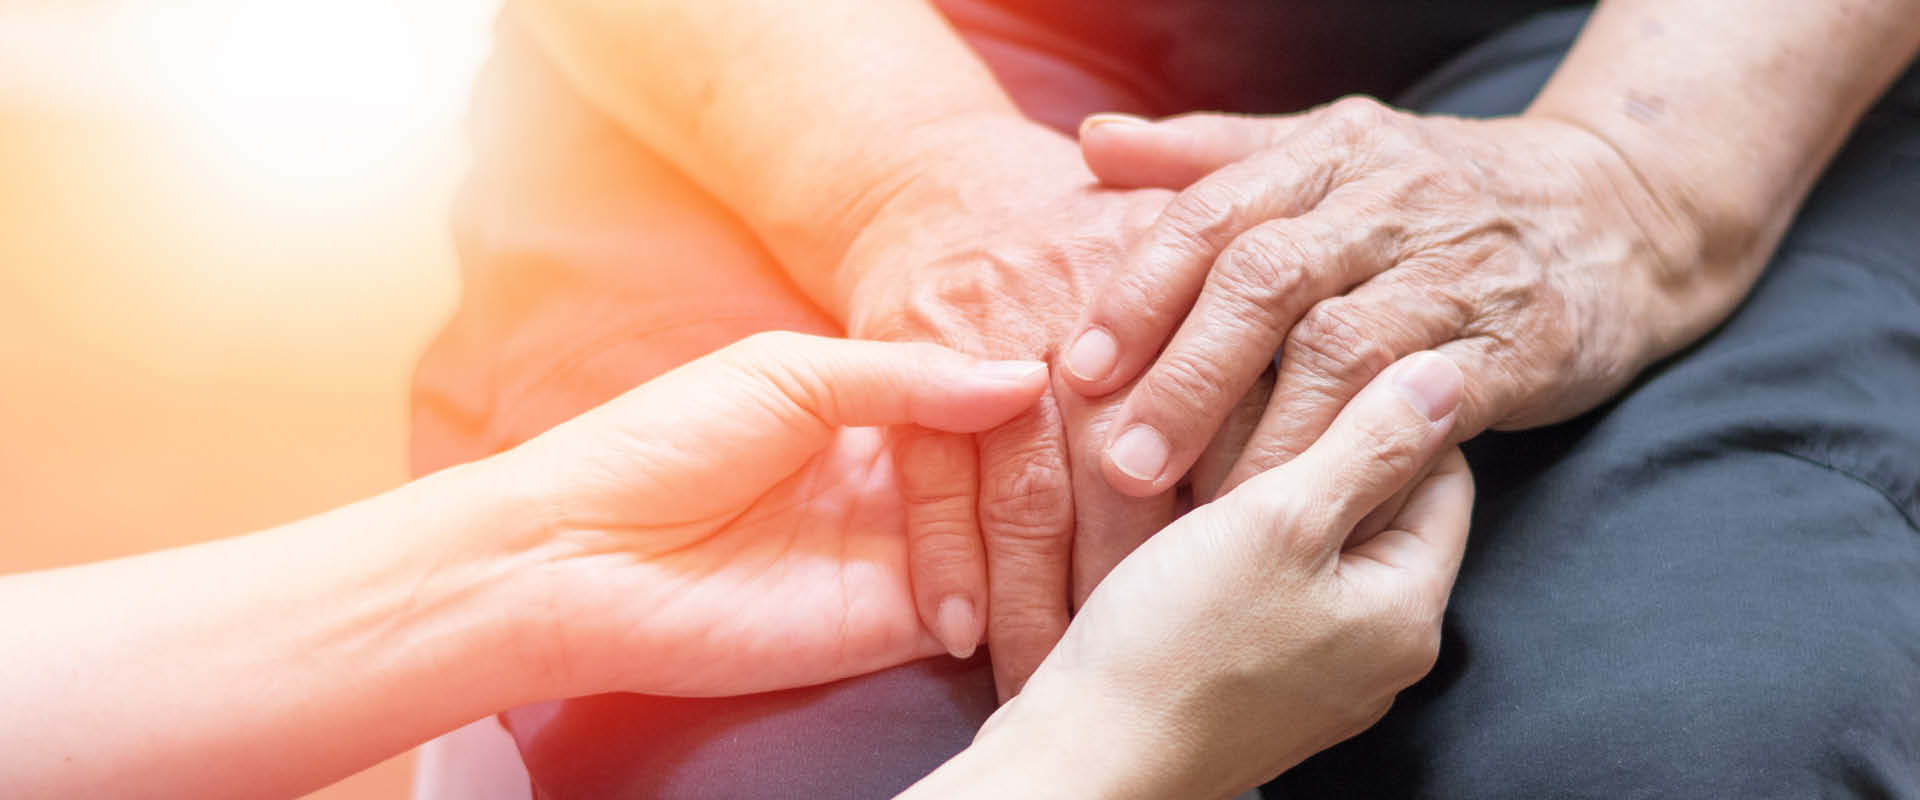 Caregiver holding hands of elder